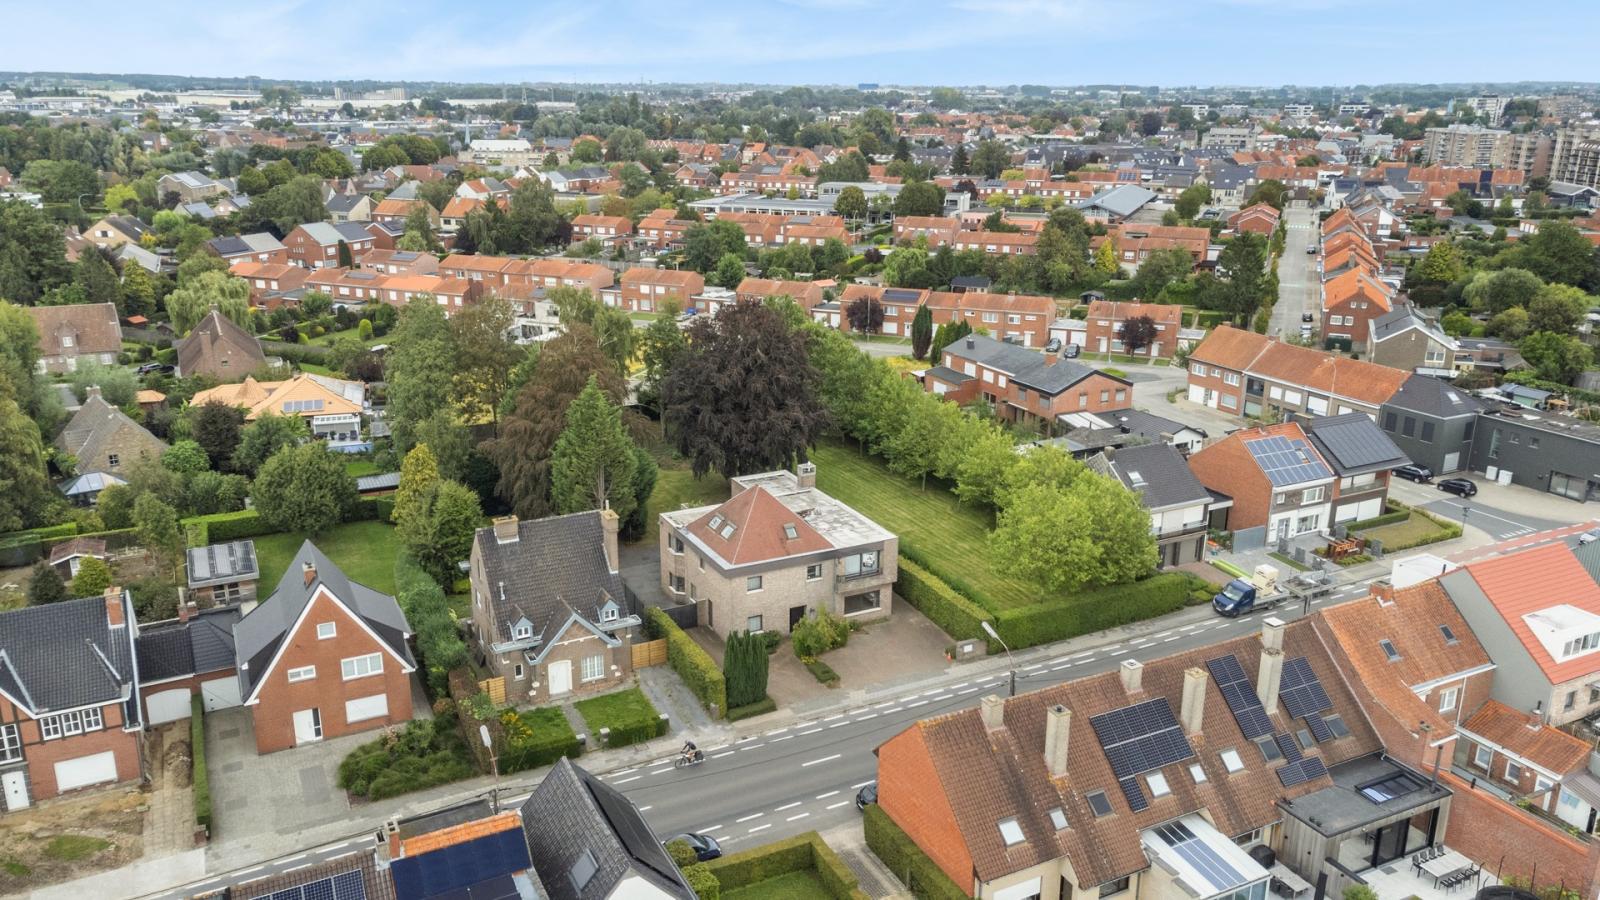 Praktijkruimte en exclusieve vrijstaande woning met diverse mogelijkheden vlakbij centrum Roeselare!